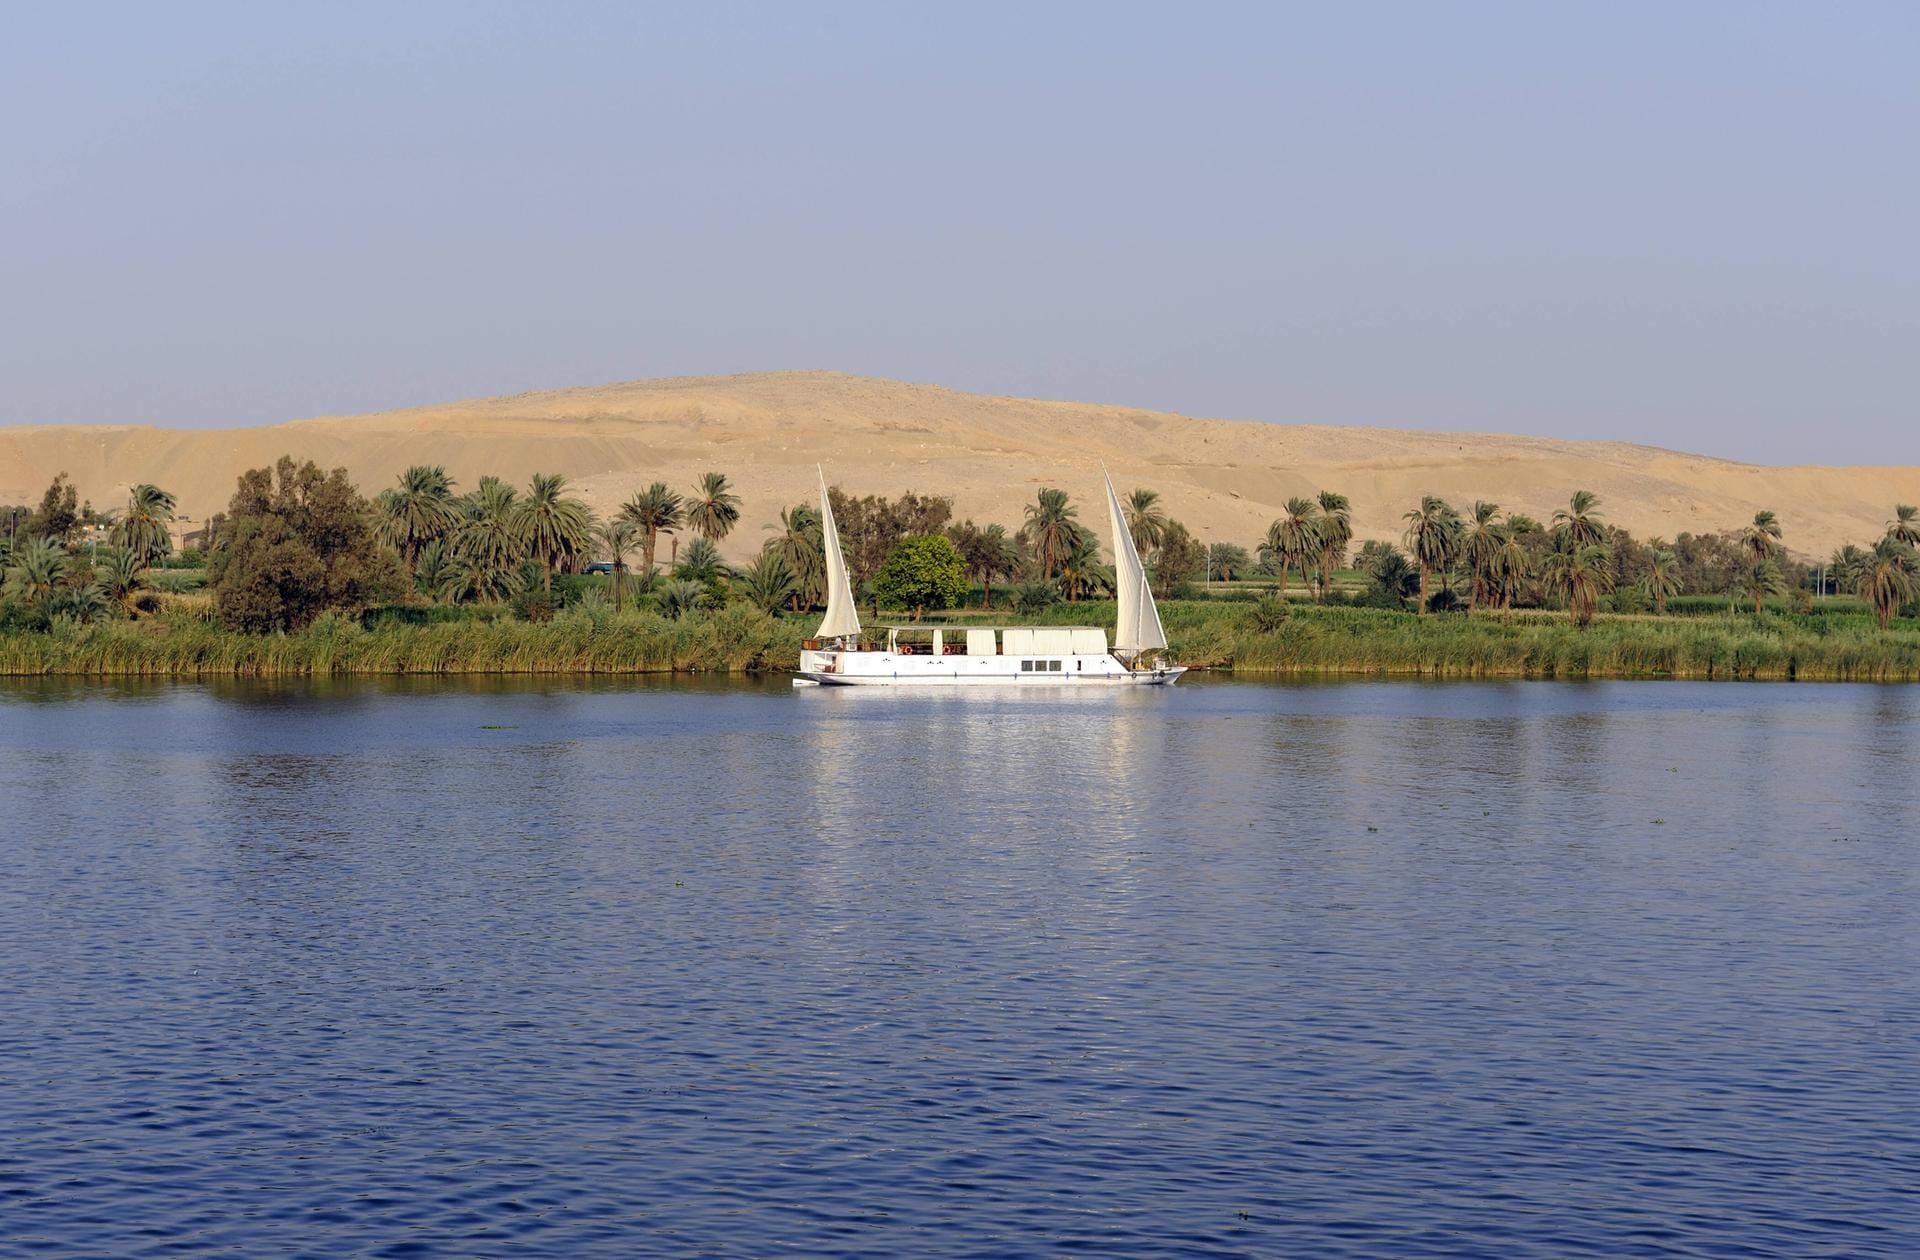 Zweimastige Felukke mit Dhau-Segeln auf dem Nil. Dahinter erstreckt sich die Sahara.